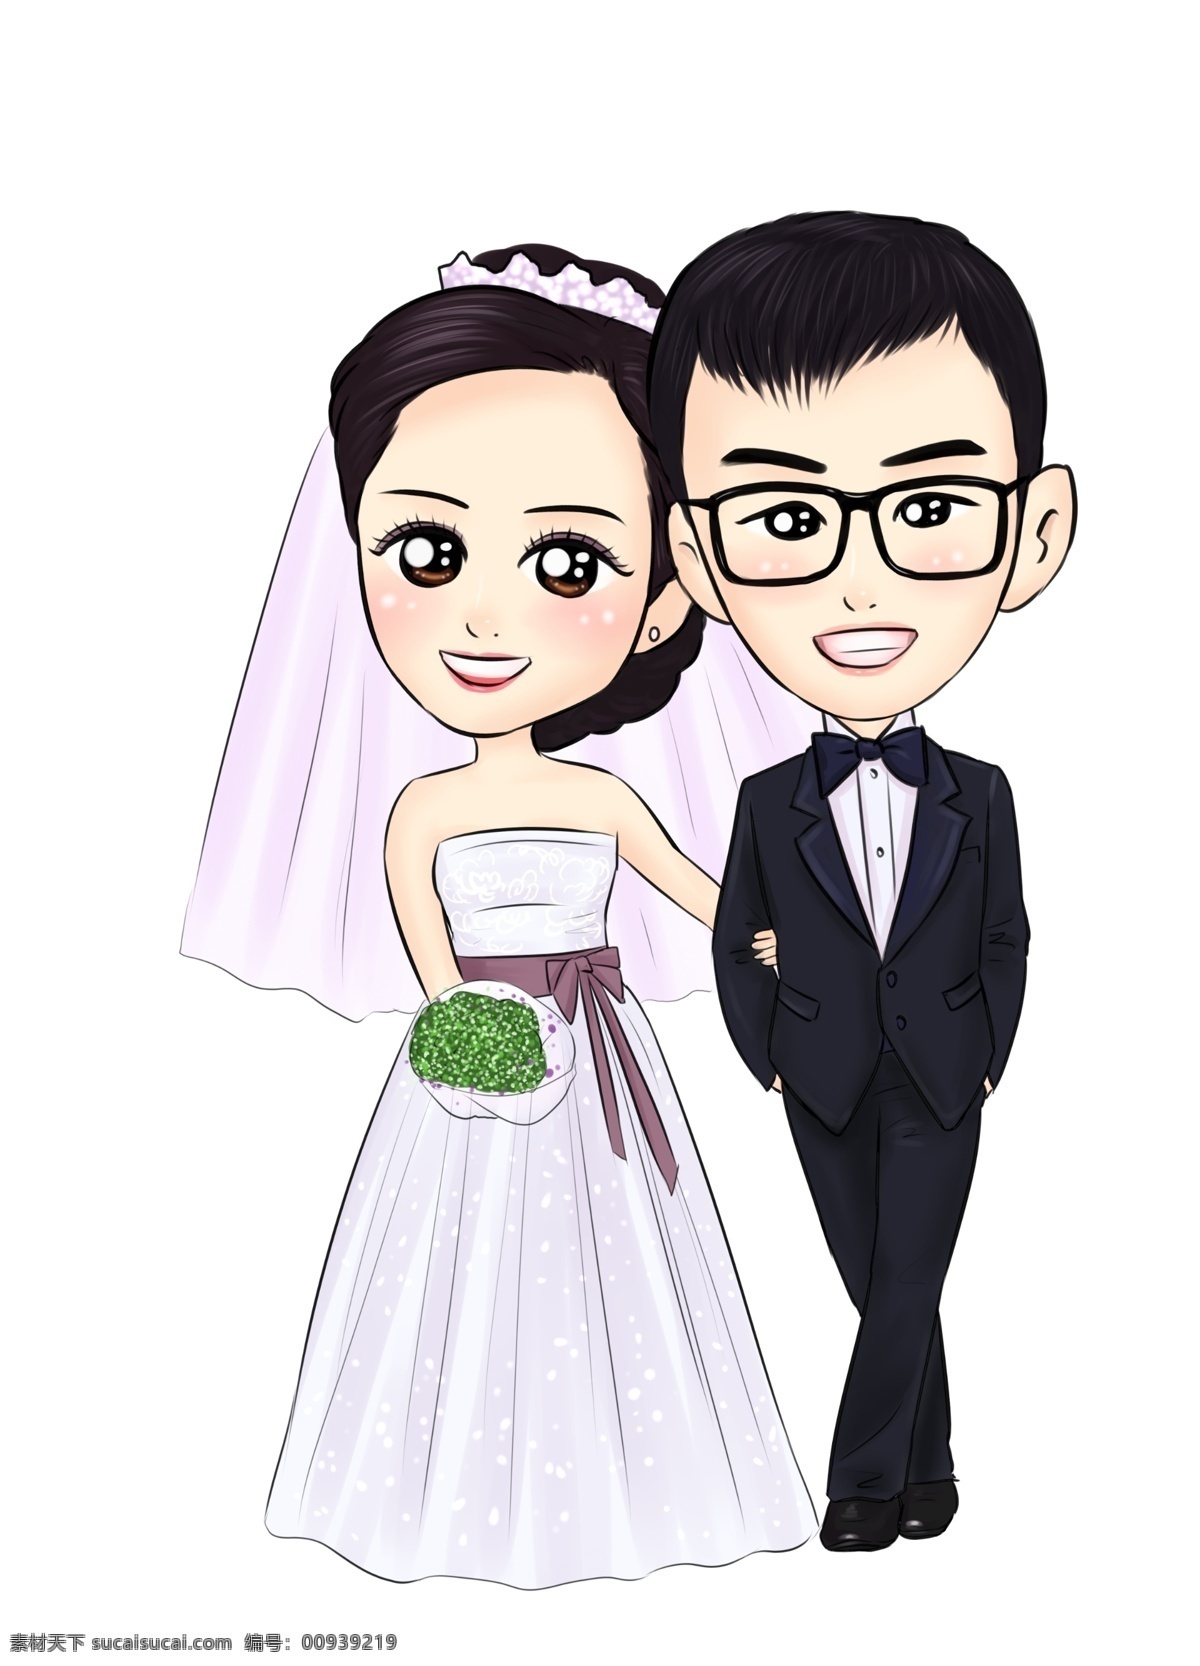 300 dpipsd 新人 结婚照 婚礼 卡通设计 美丽 漂亮 psd源文件 婚纱 儿童 写真 相册 模板